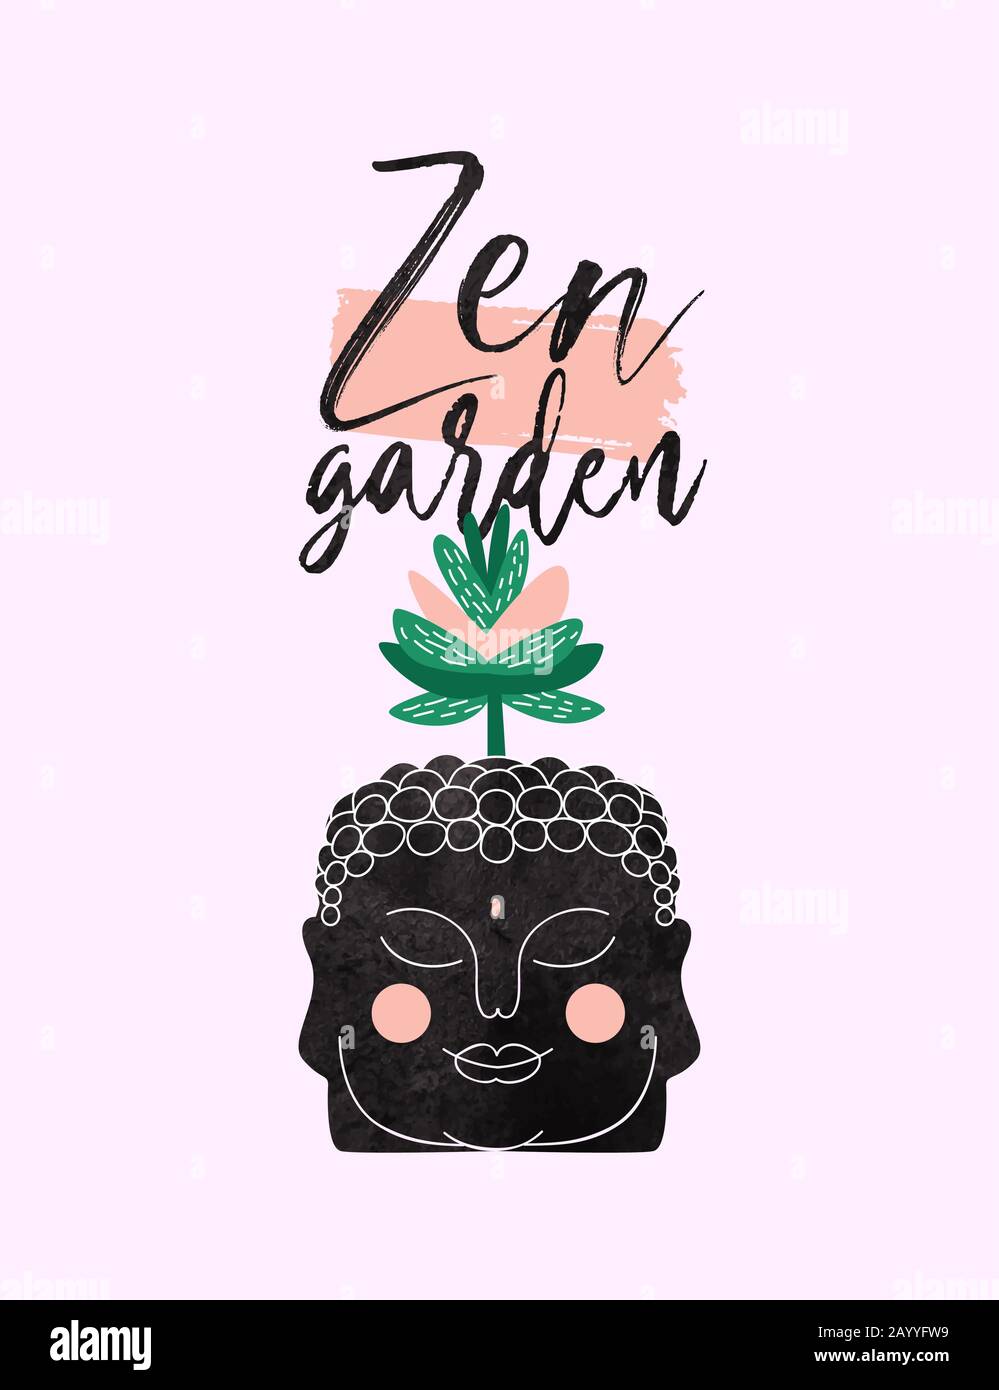 Zen Garten handgezeichnetes Zitat Illustration des süßen buddha-kopfes mit exotischer saftiger Pflanze für Entspannung Typografie Design. Stock Vektor